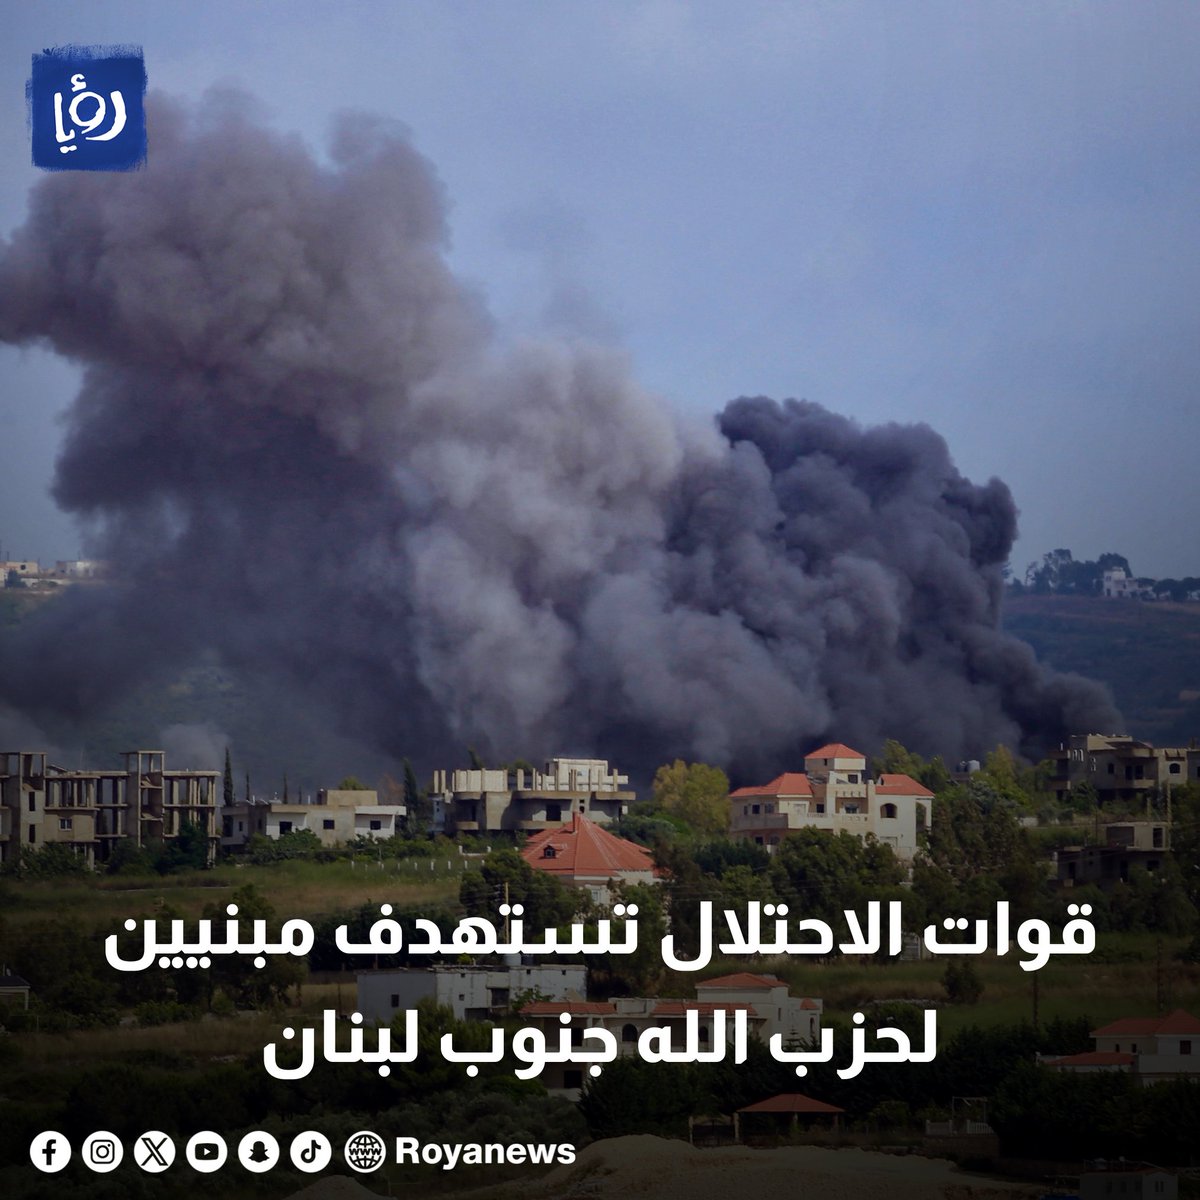 قوات الاحتلال تستهدف مبنيين لحزب الله جنوب لبنان royanews.tv/news/327660 #رؤيا_الإخباري #عاجل #لبنان